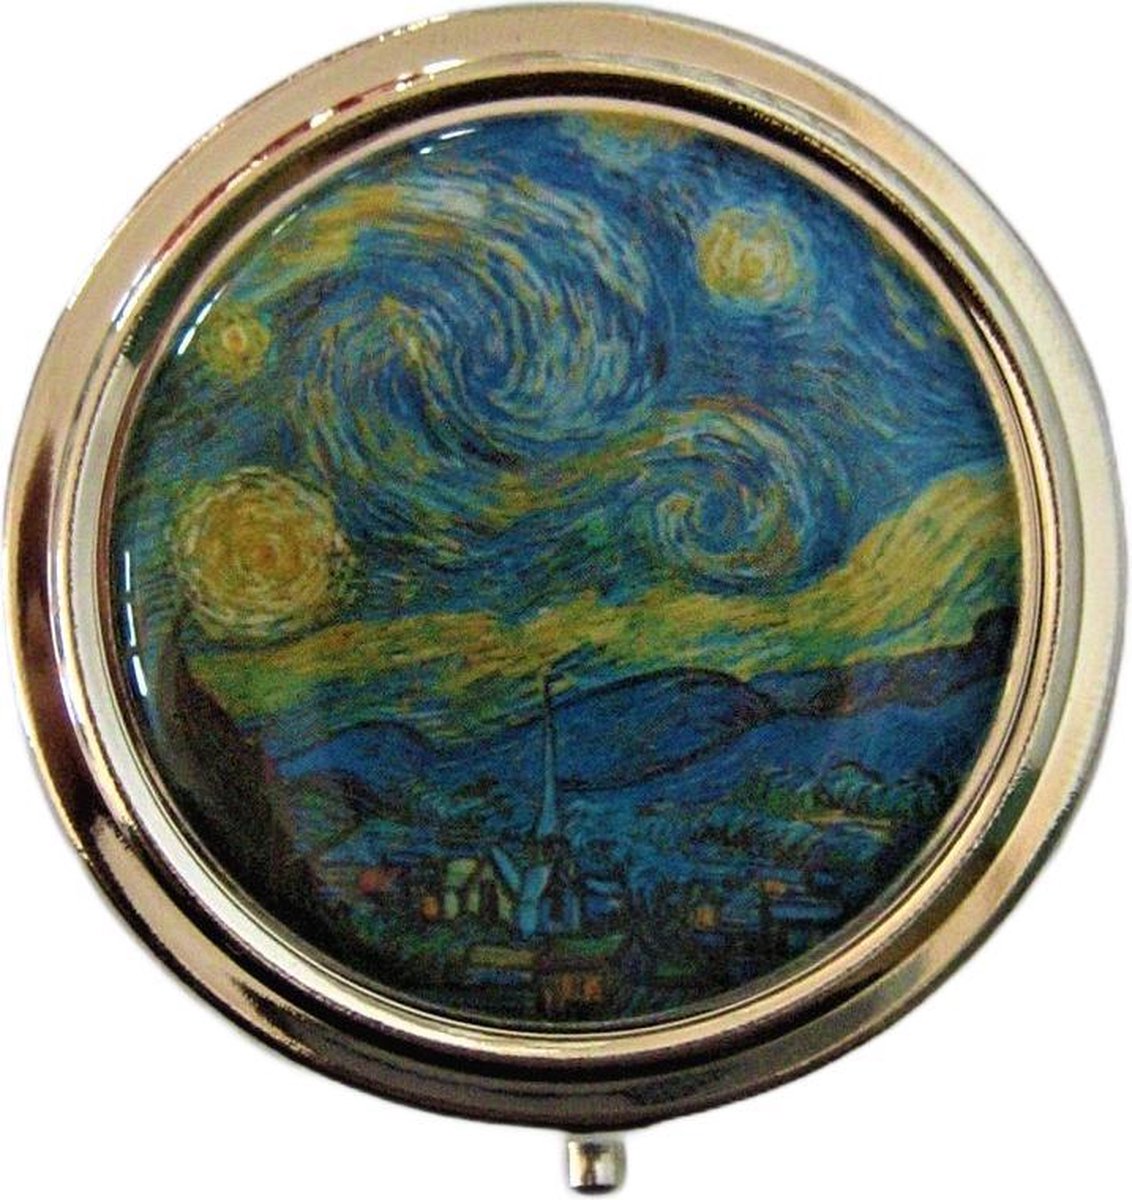 Pillendoosje Sterrenacht Vincent van Gogh, met spiegeltje en drie vakjes